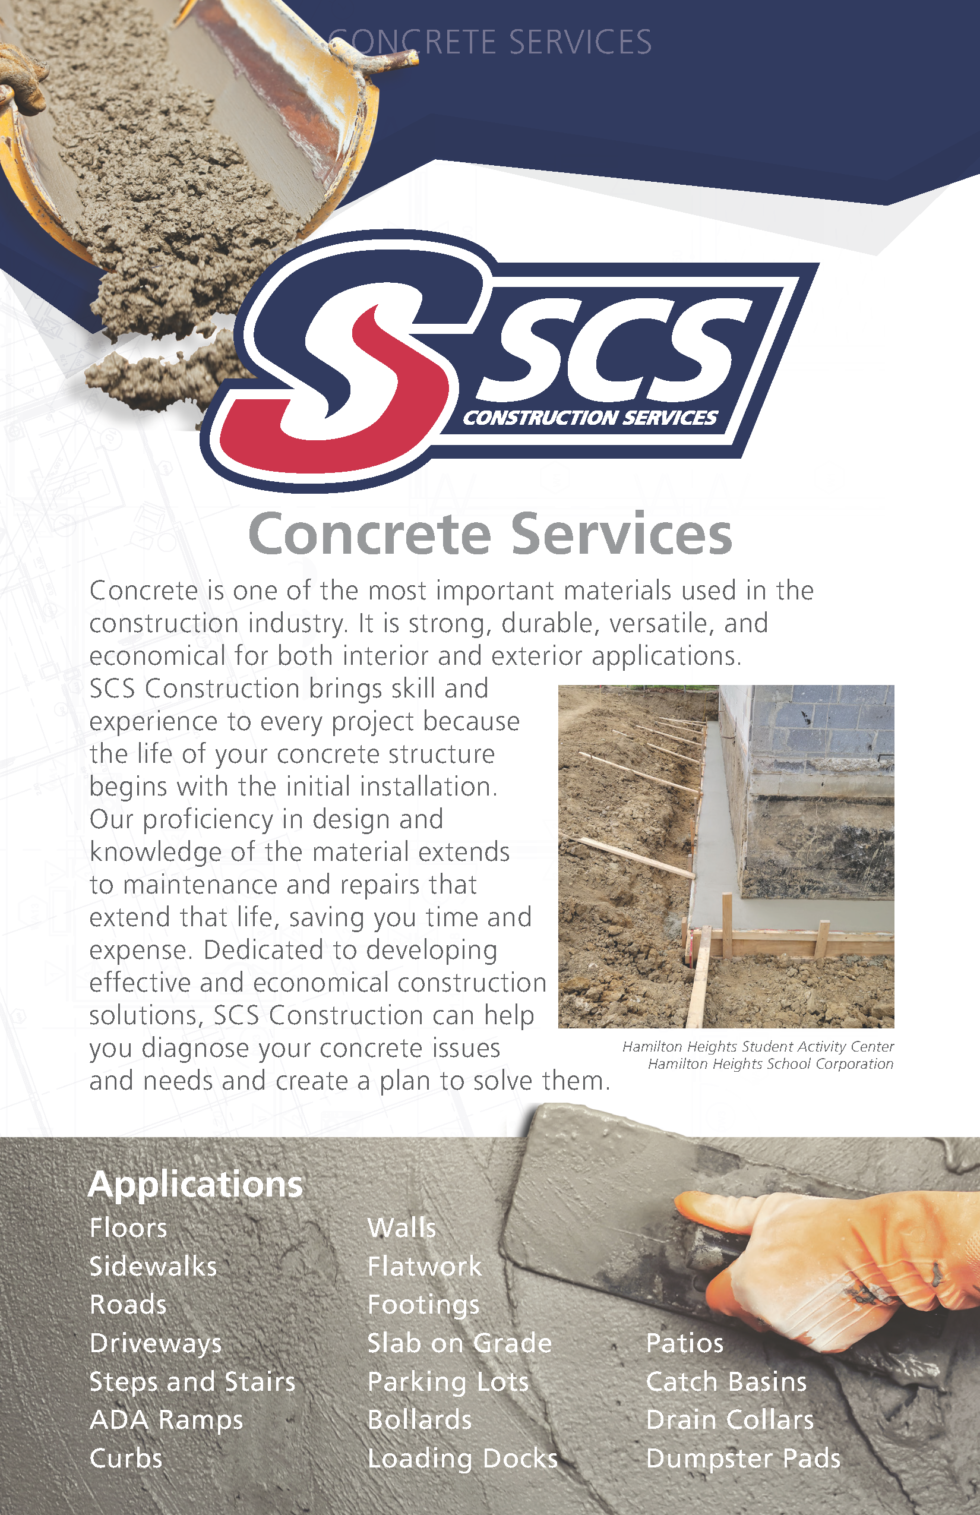 Concrete Services - SCS Construction Services, Inc.